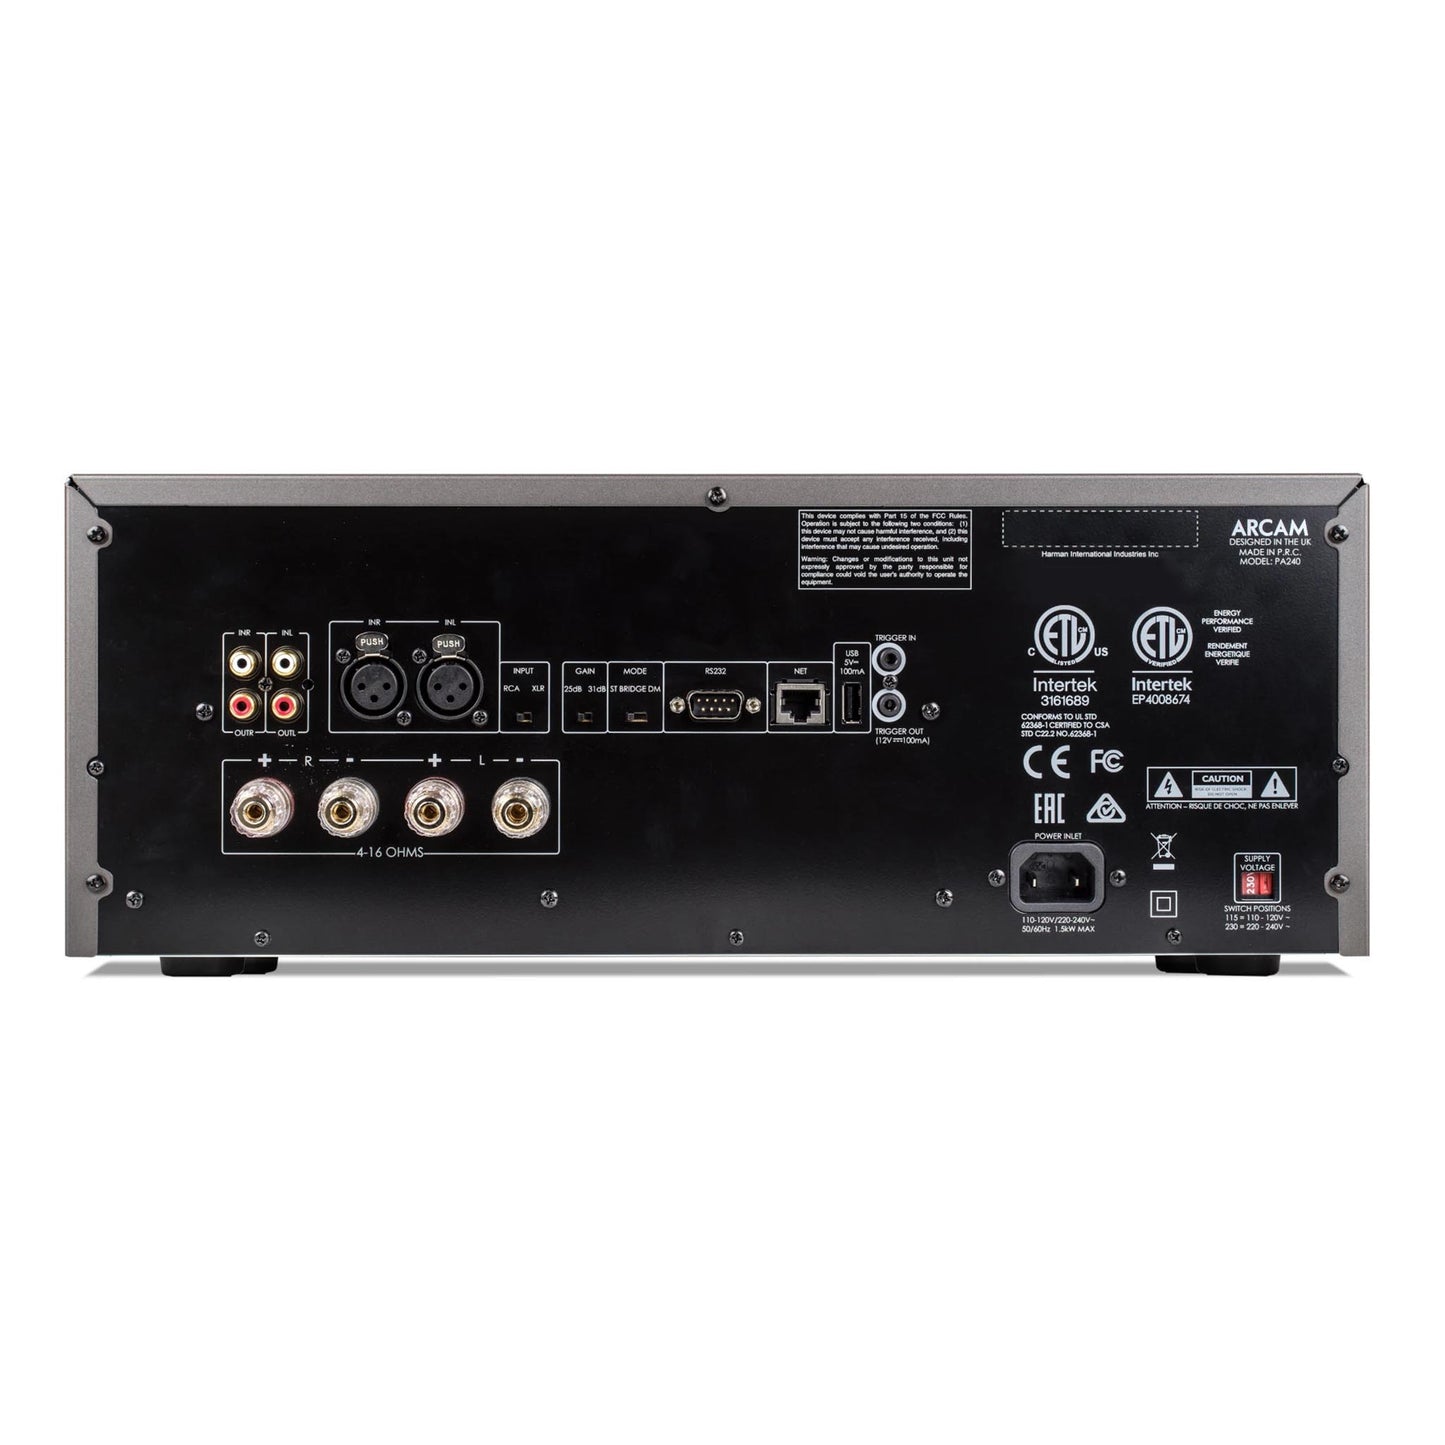 Arcam PA240 2-channel power amplifier